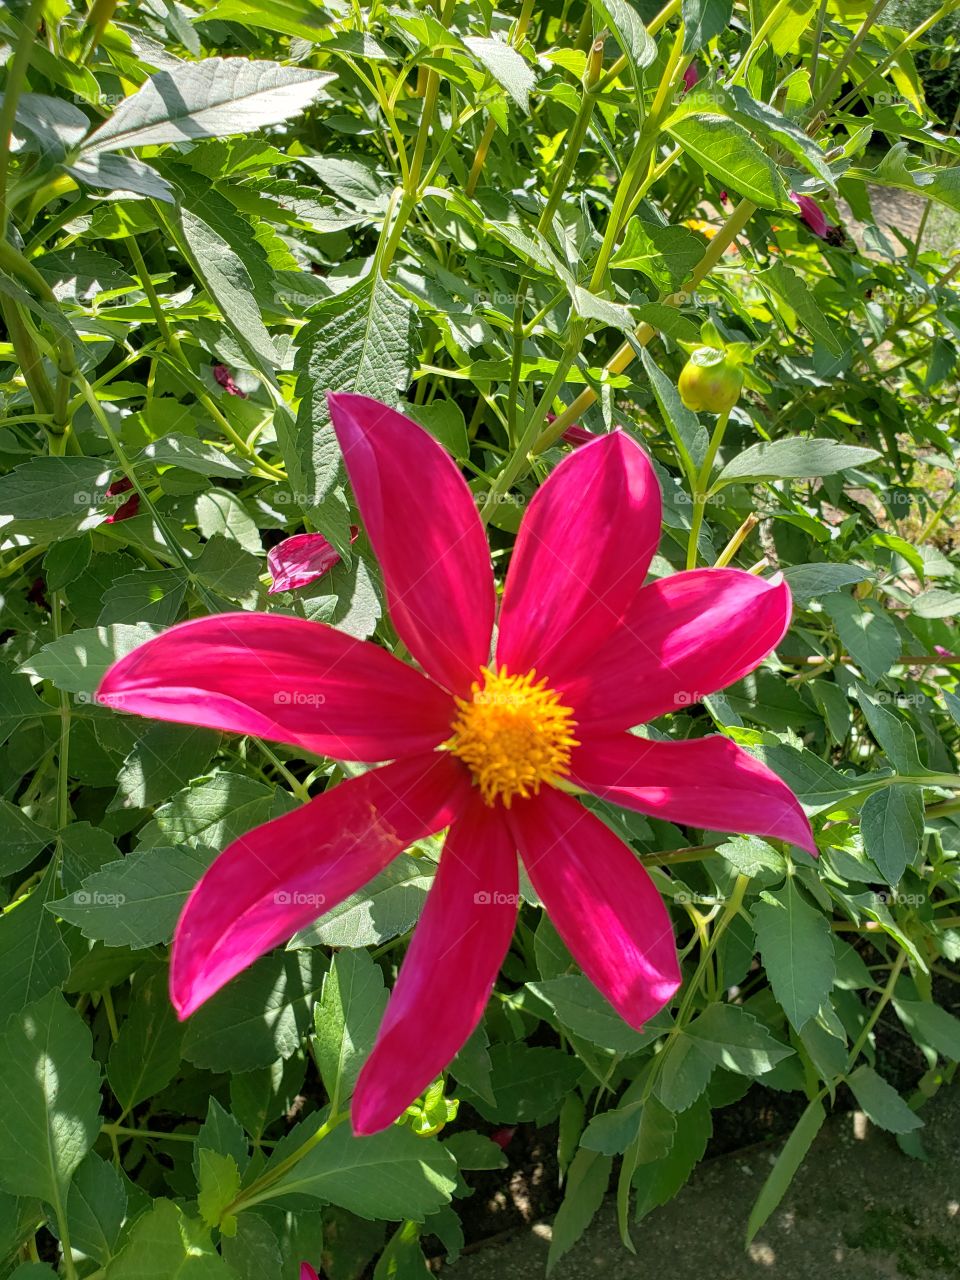 Pink flower in sunshine